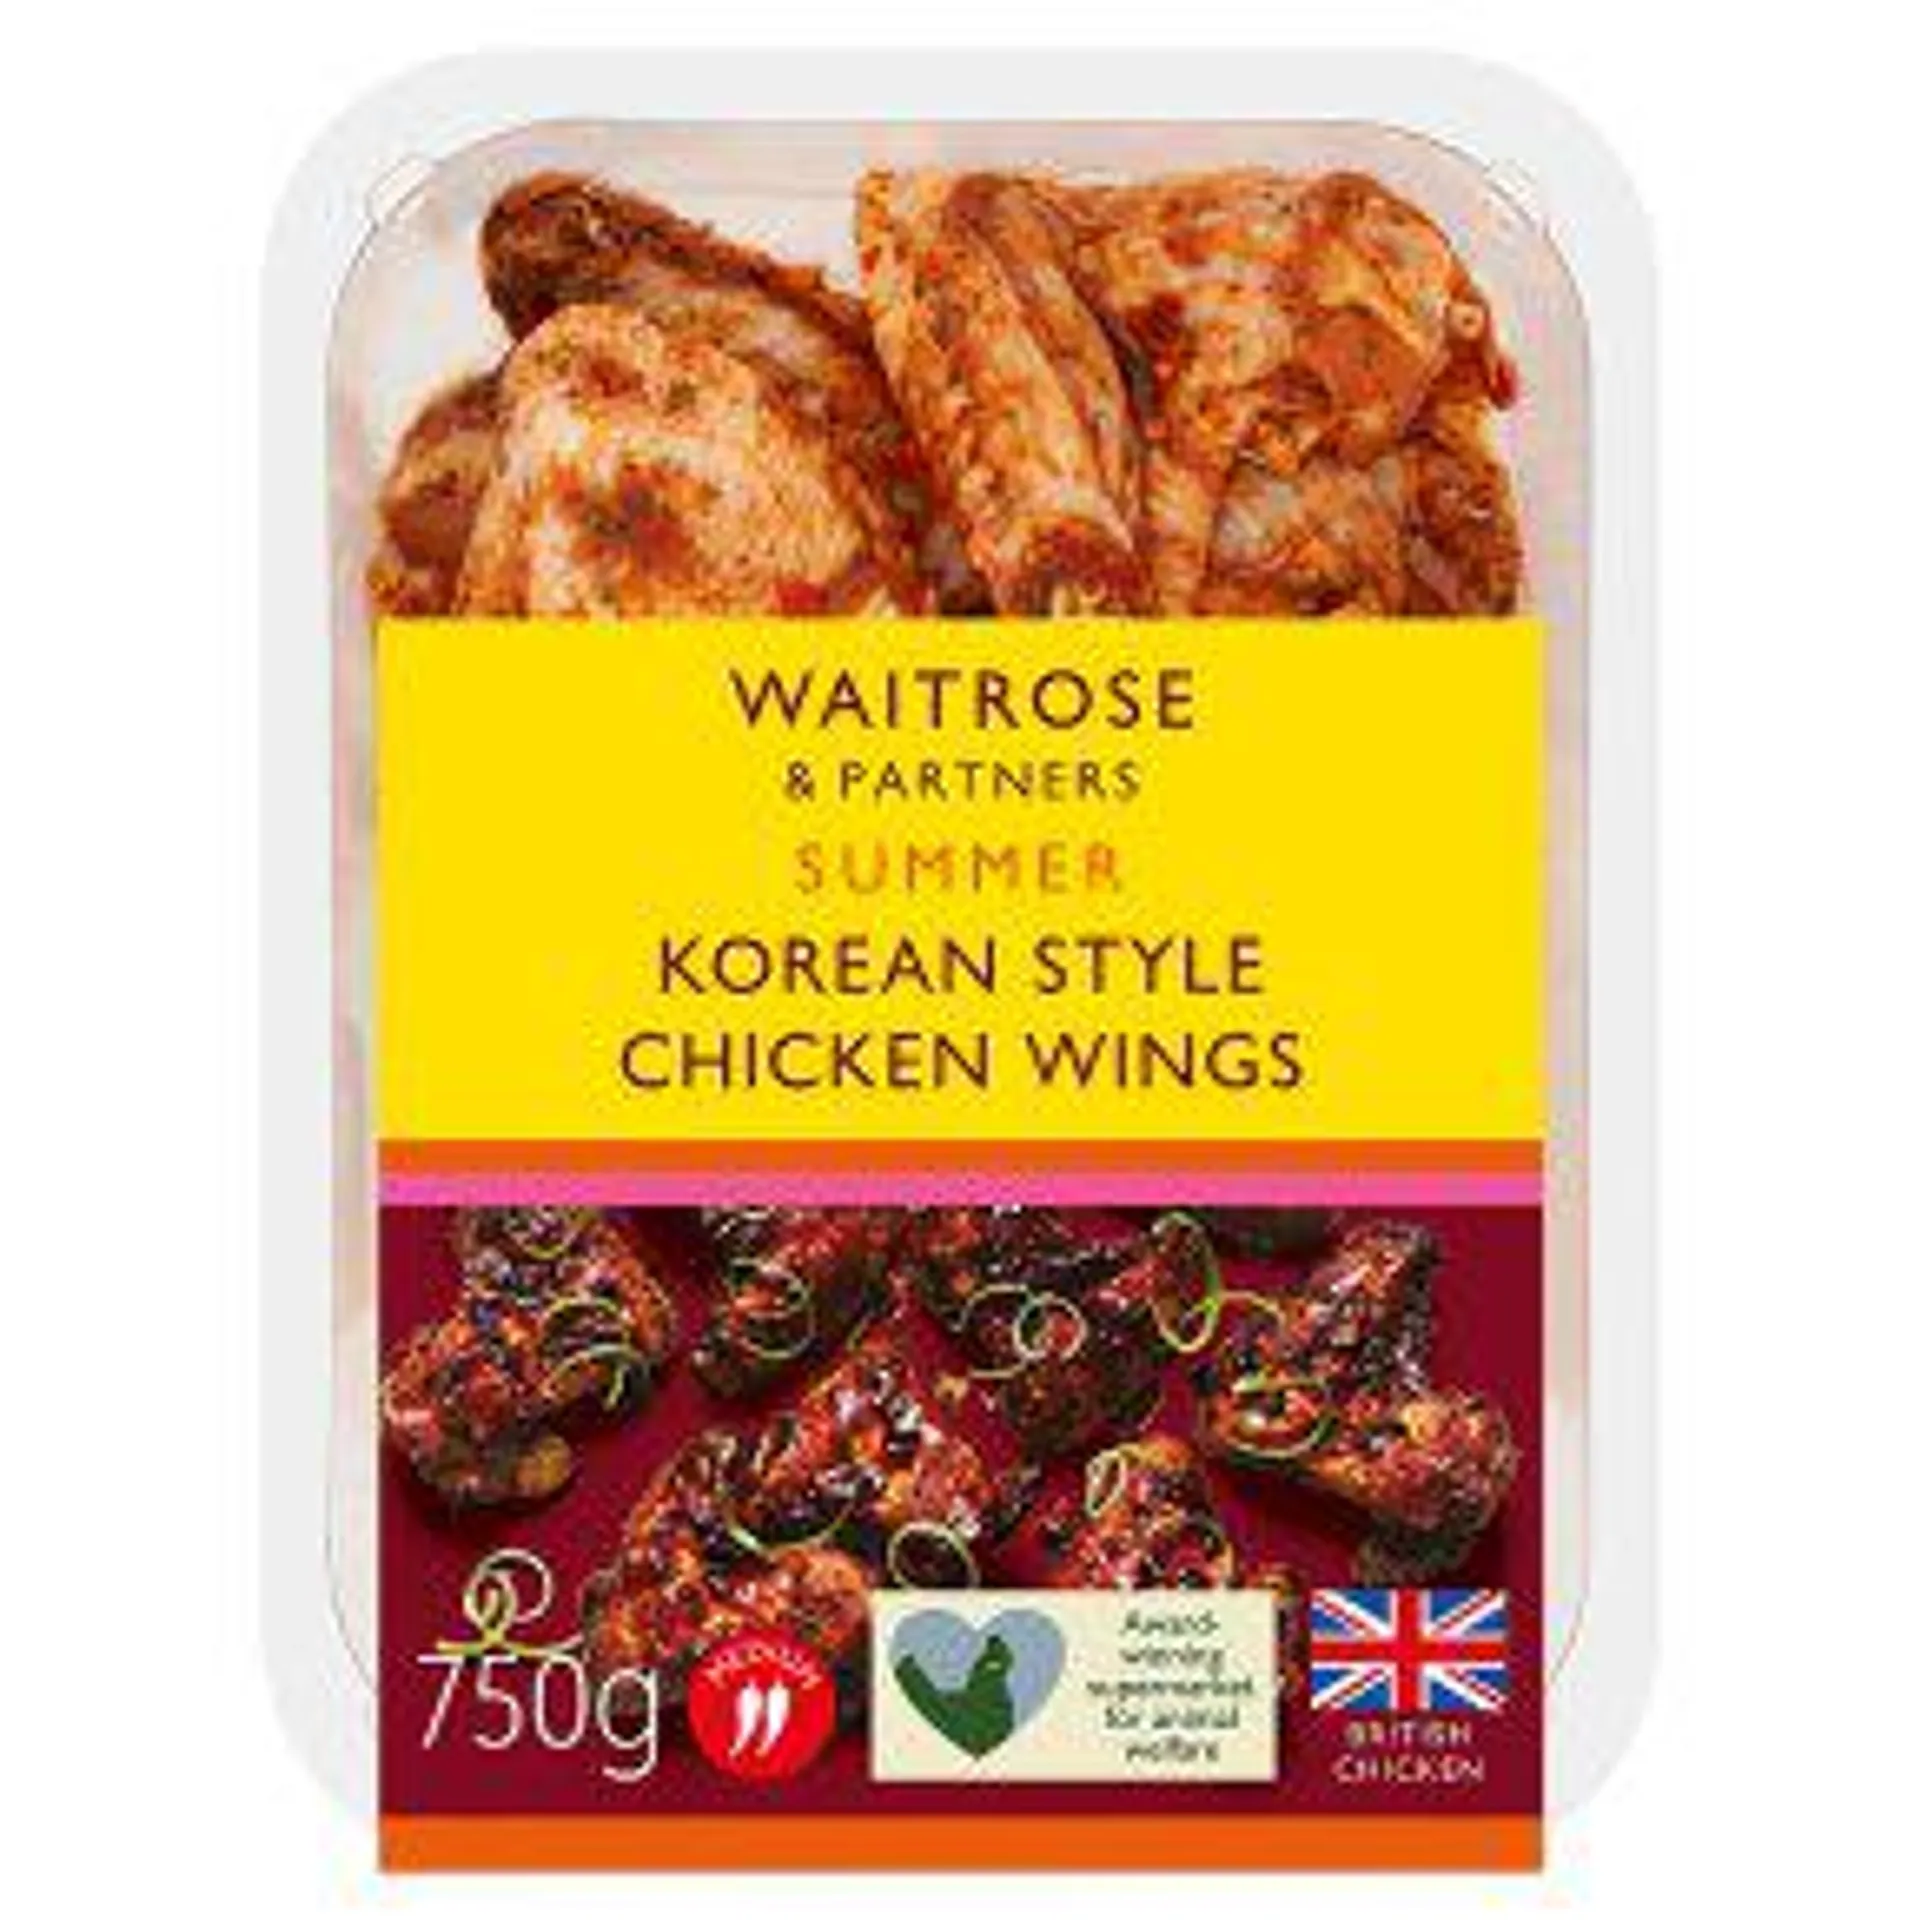 Waitrose Korean Style Chicken Wings